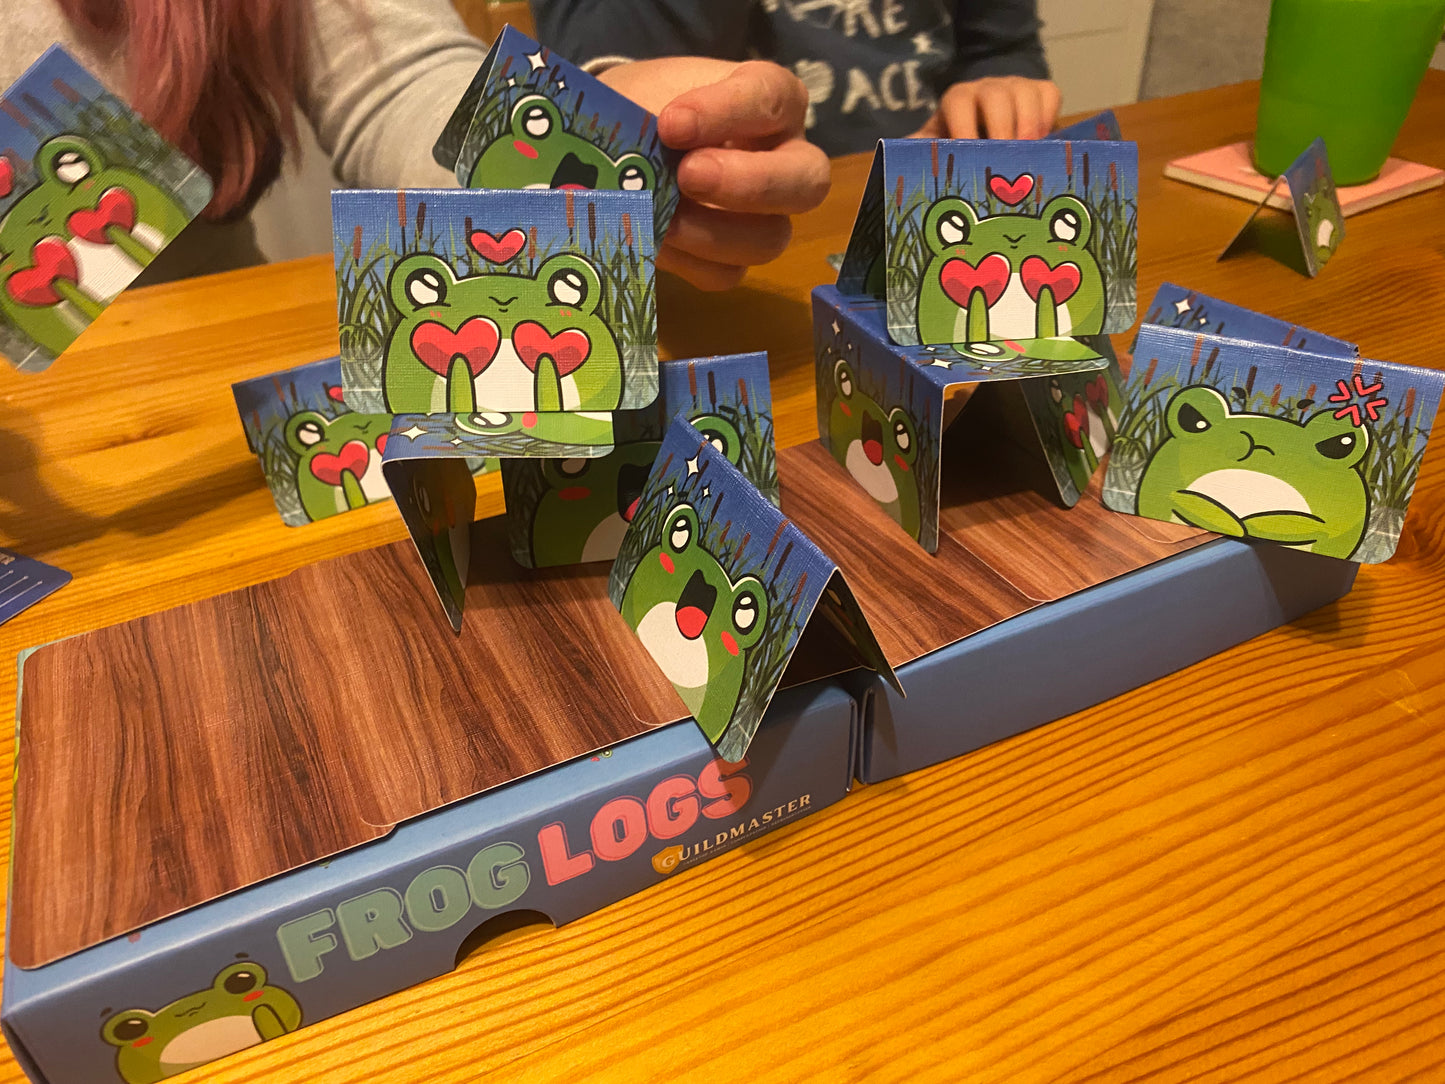 Frog Logs! - Guildmaster Games